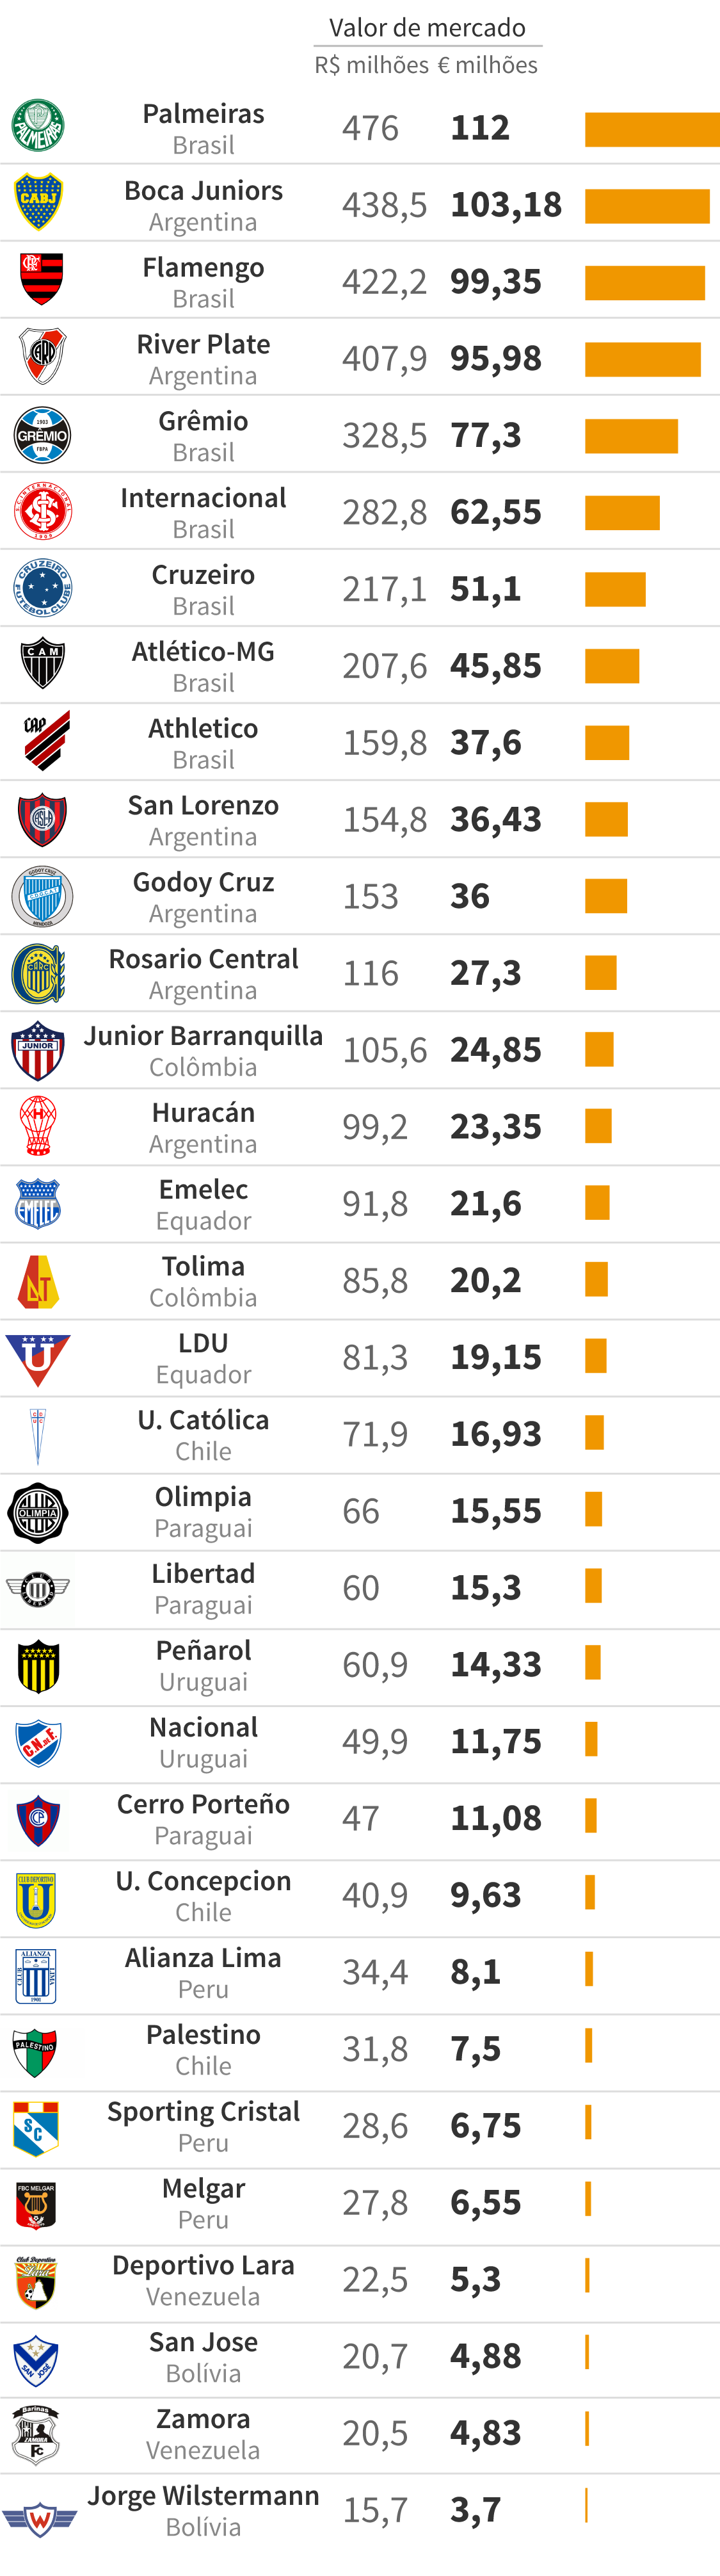 Quais os times brasileiros têm 3 Libertadores?